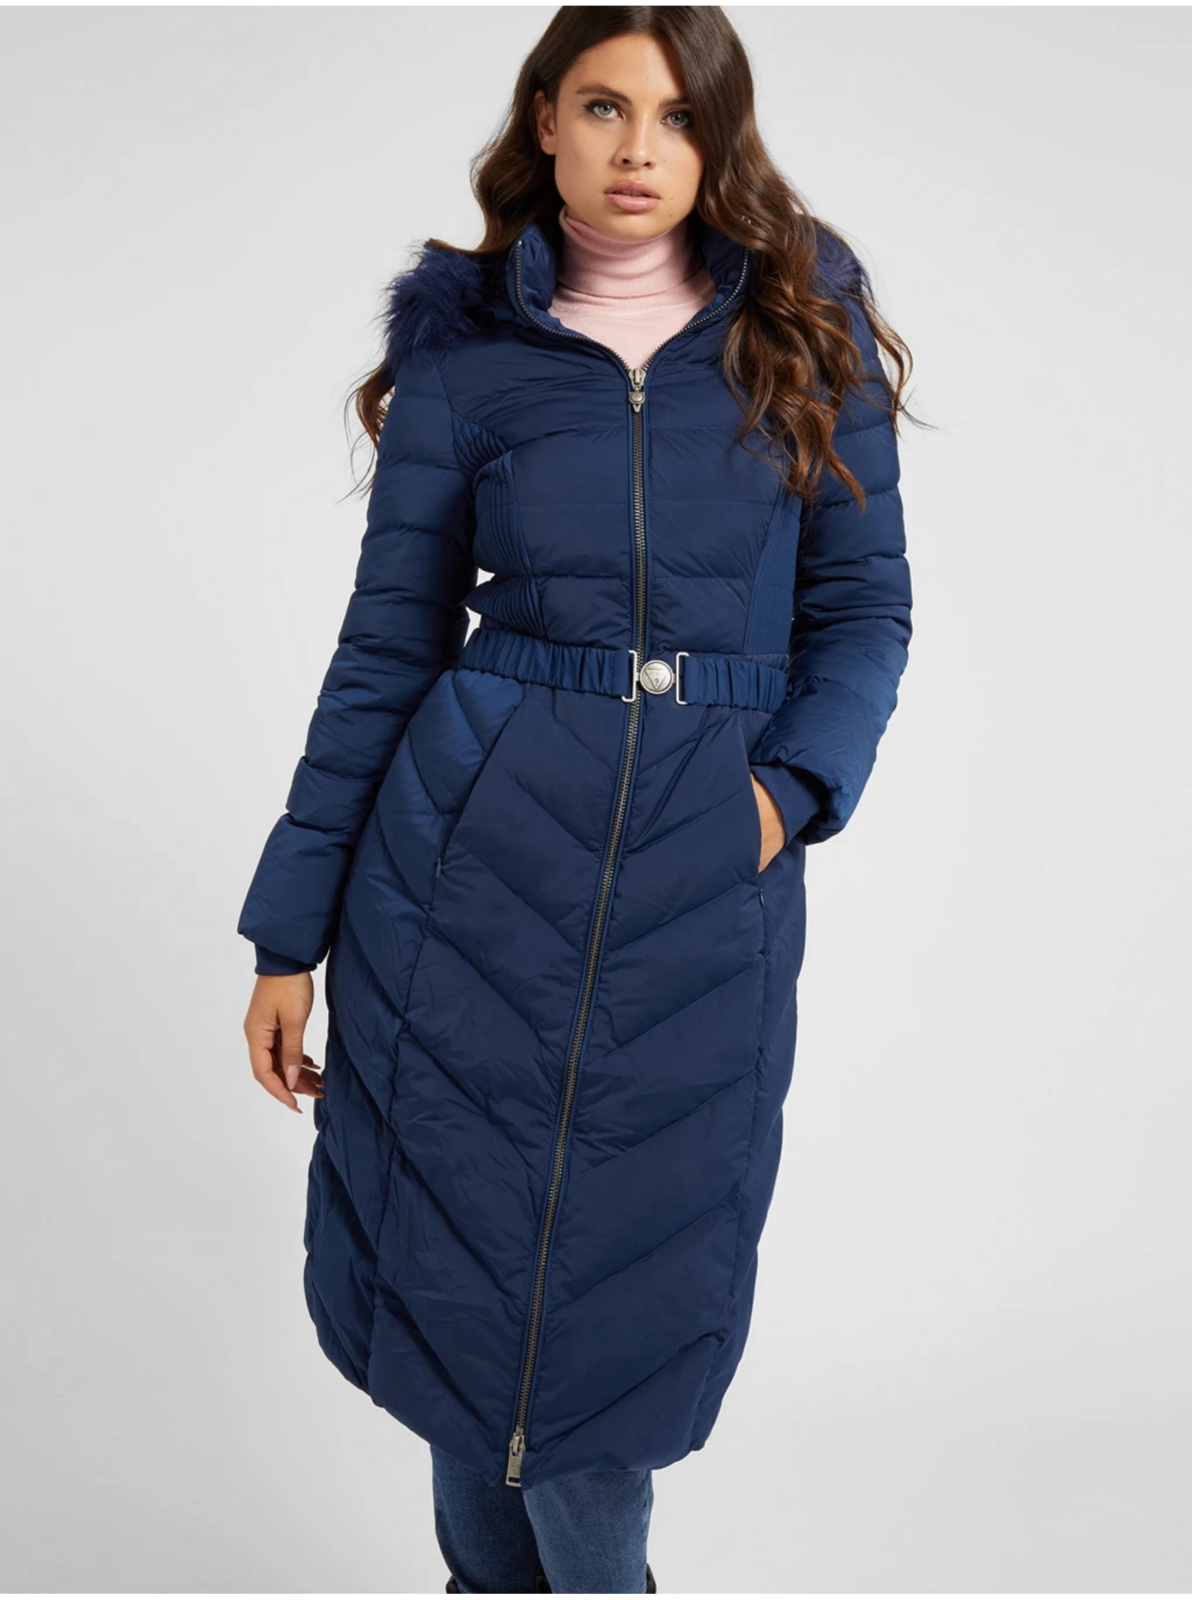 Tmavě modrý dámský péřový prošívaný kabát